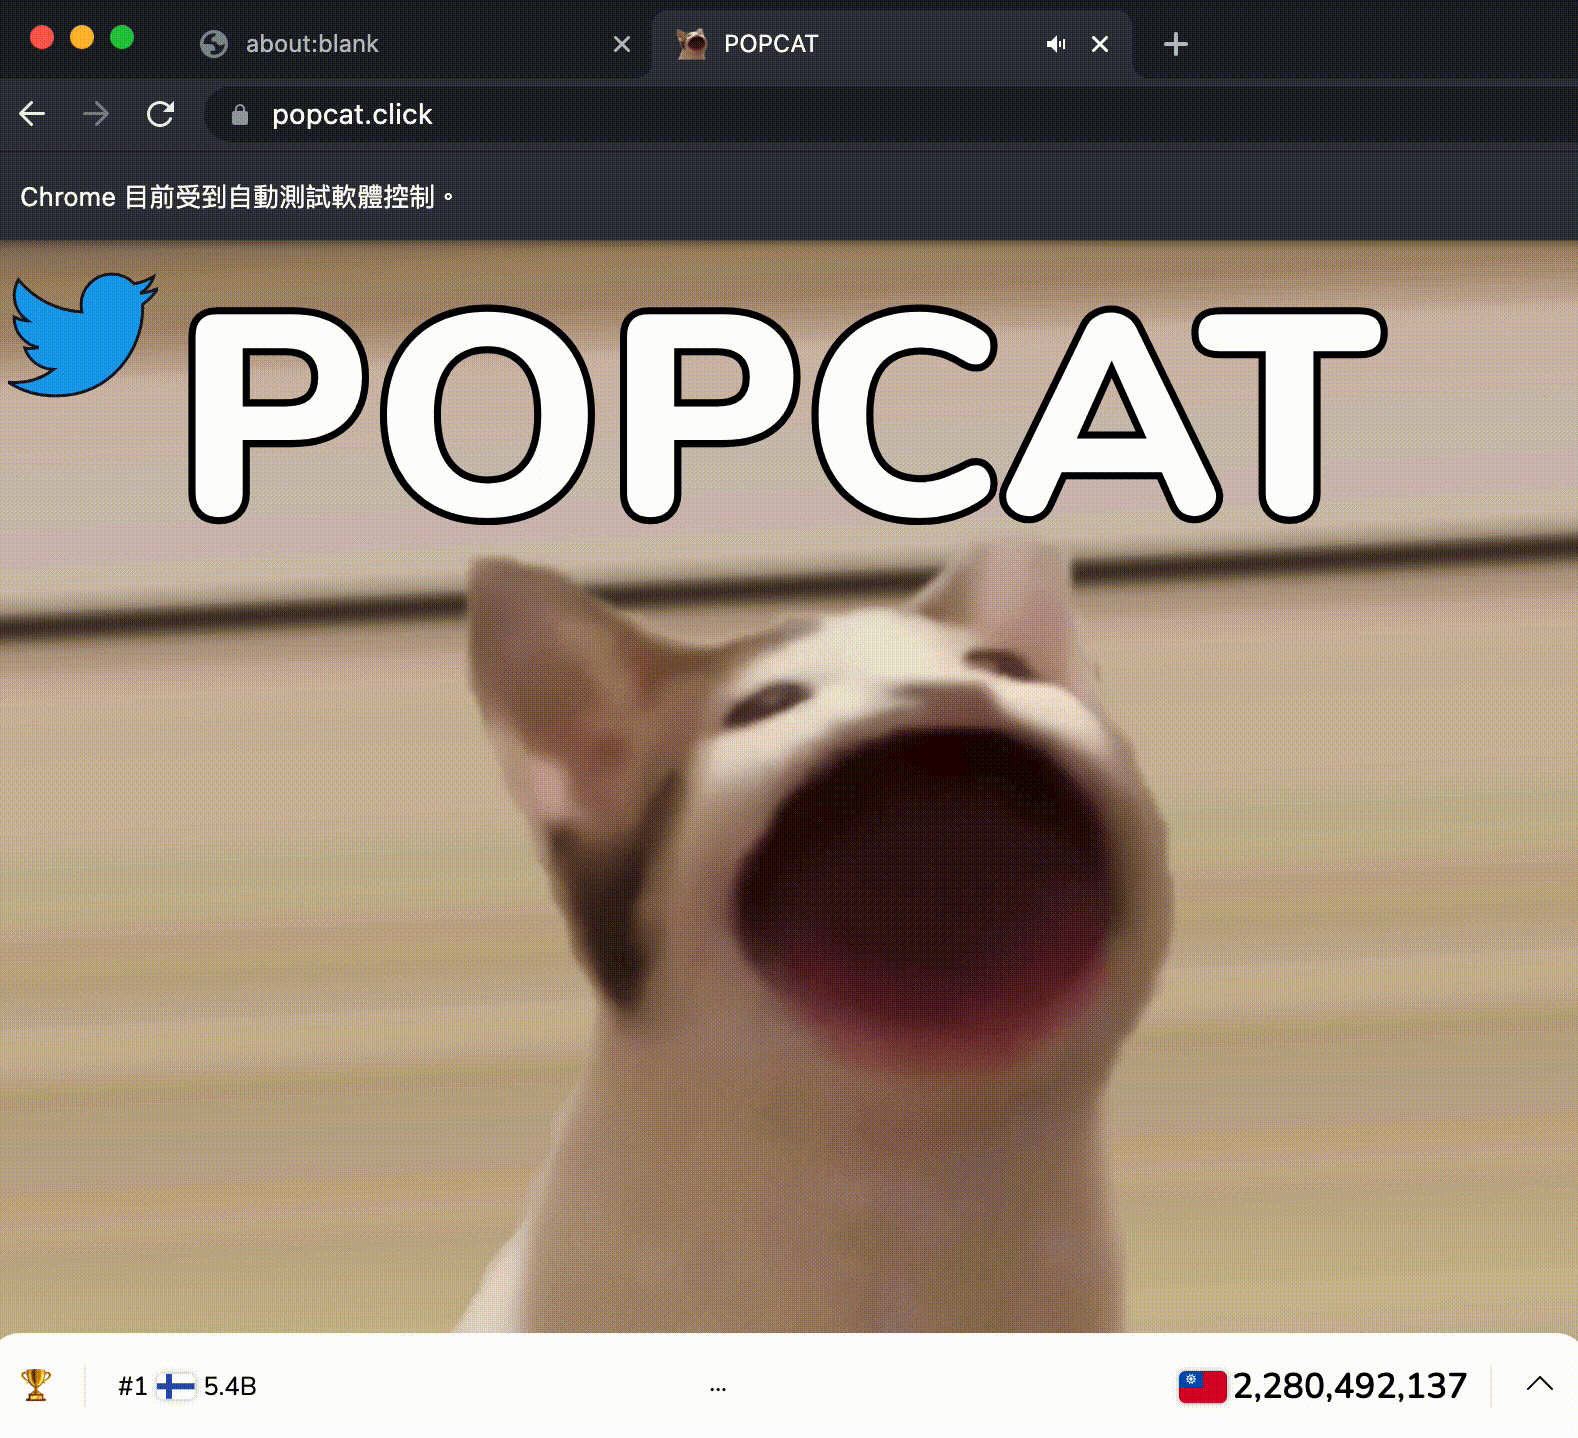 popcat click auto clicker download